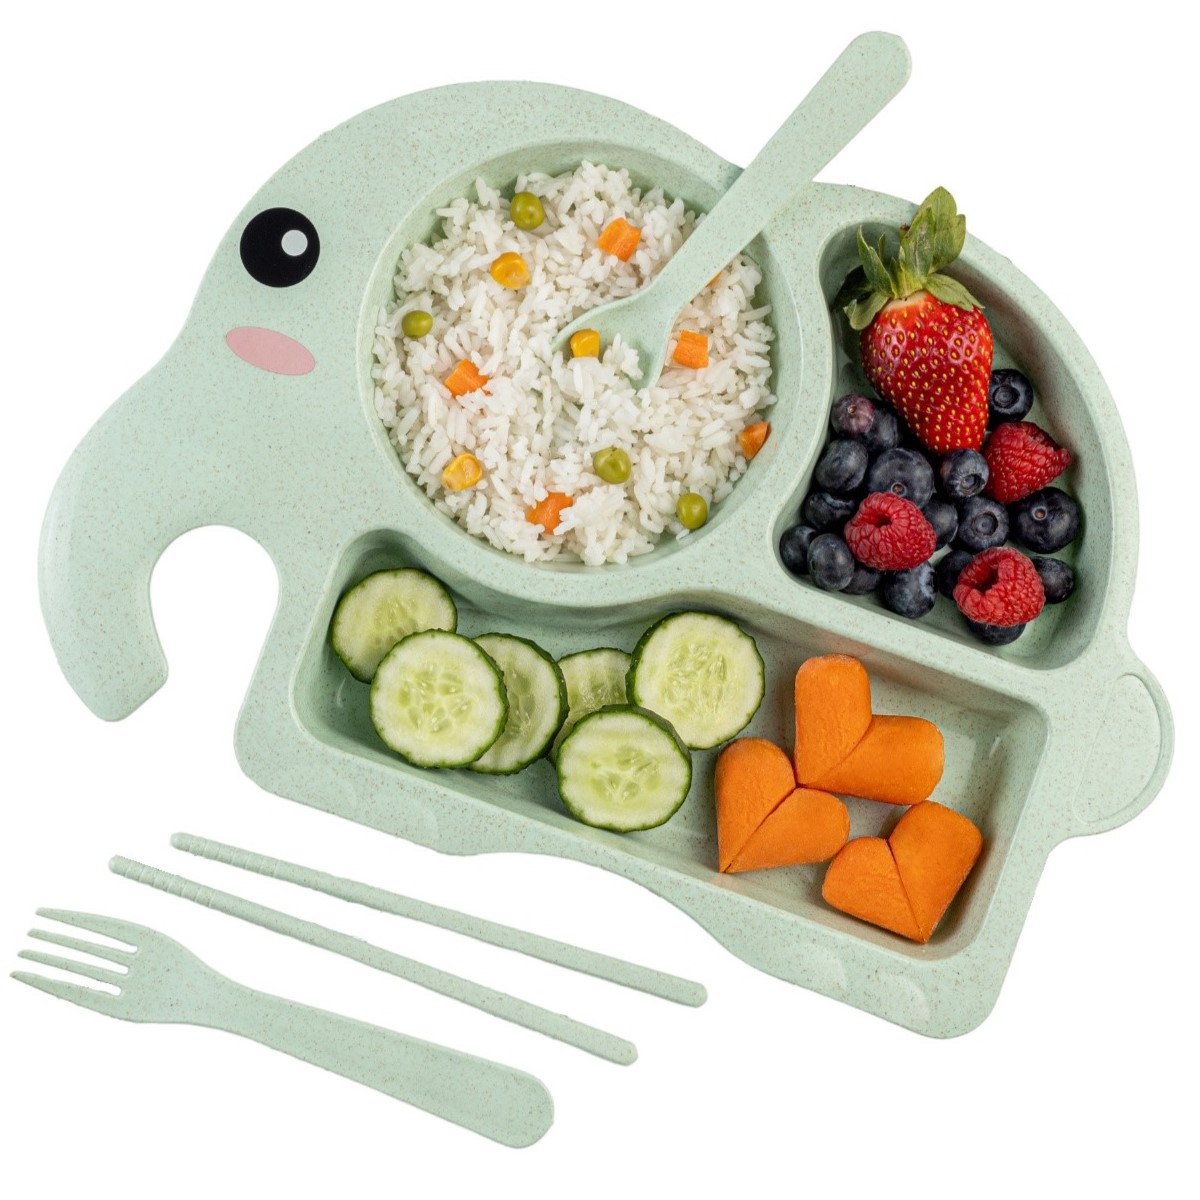 Детская посуда для кормления Добрый Филин Слонёнок тарелка, ложка, вилка, палочки, зеленый кухня детская игровая amore bello jb0208736 с настоящей водой посуда еда зеленый